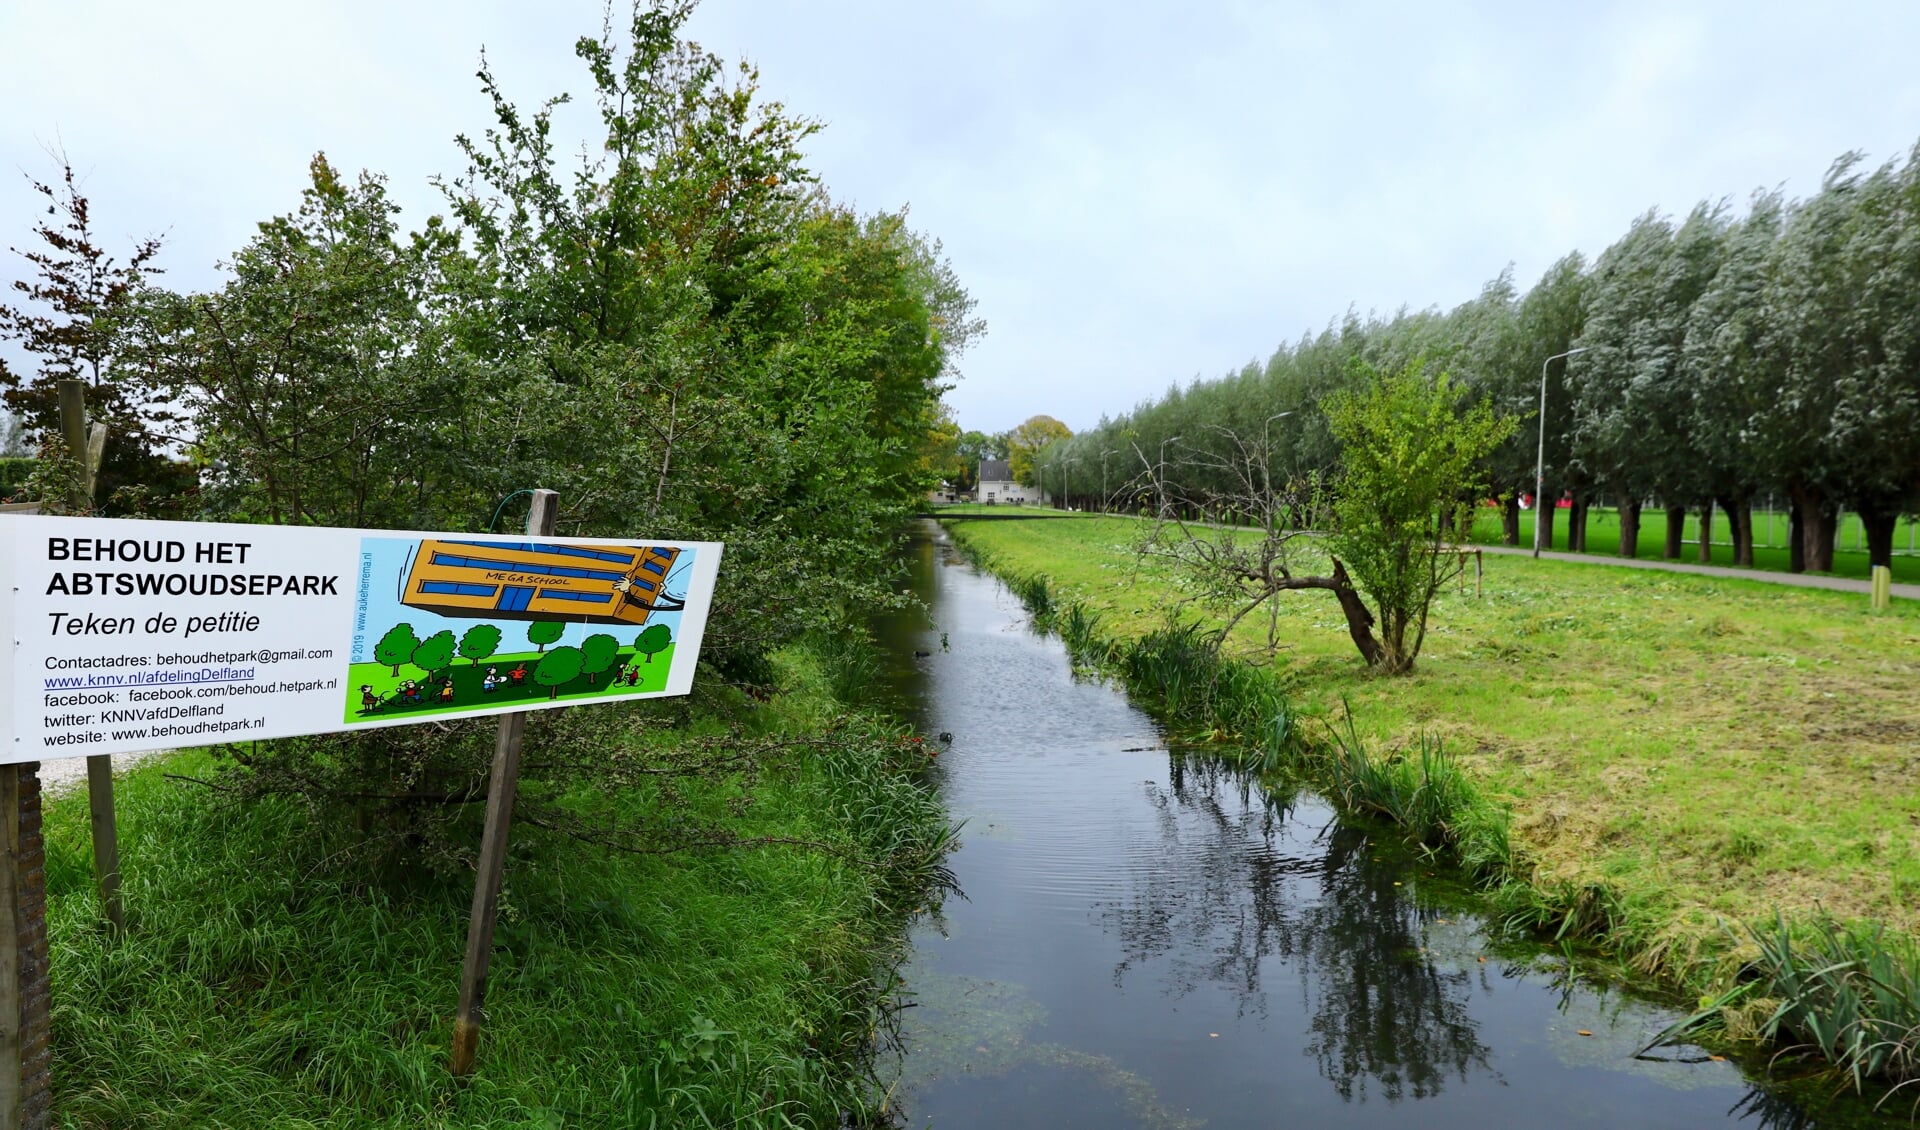 Stichting Behoud het Park 'adverteert' met een bord voor groenbehoud (Foto: Koos Bommelé)